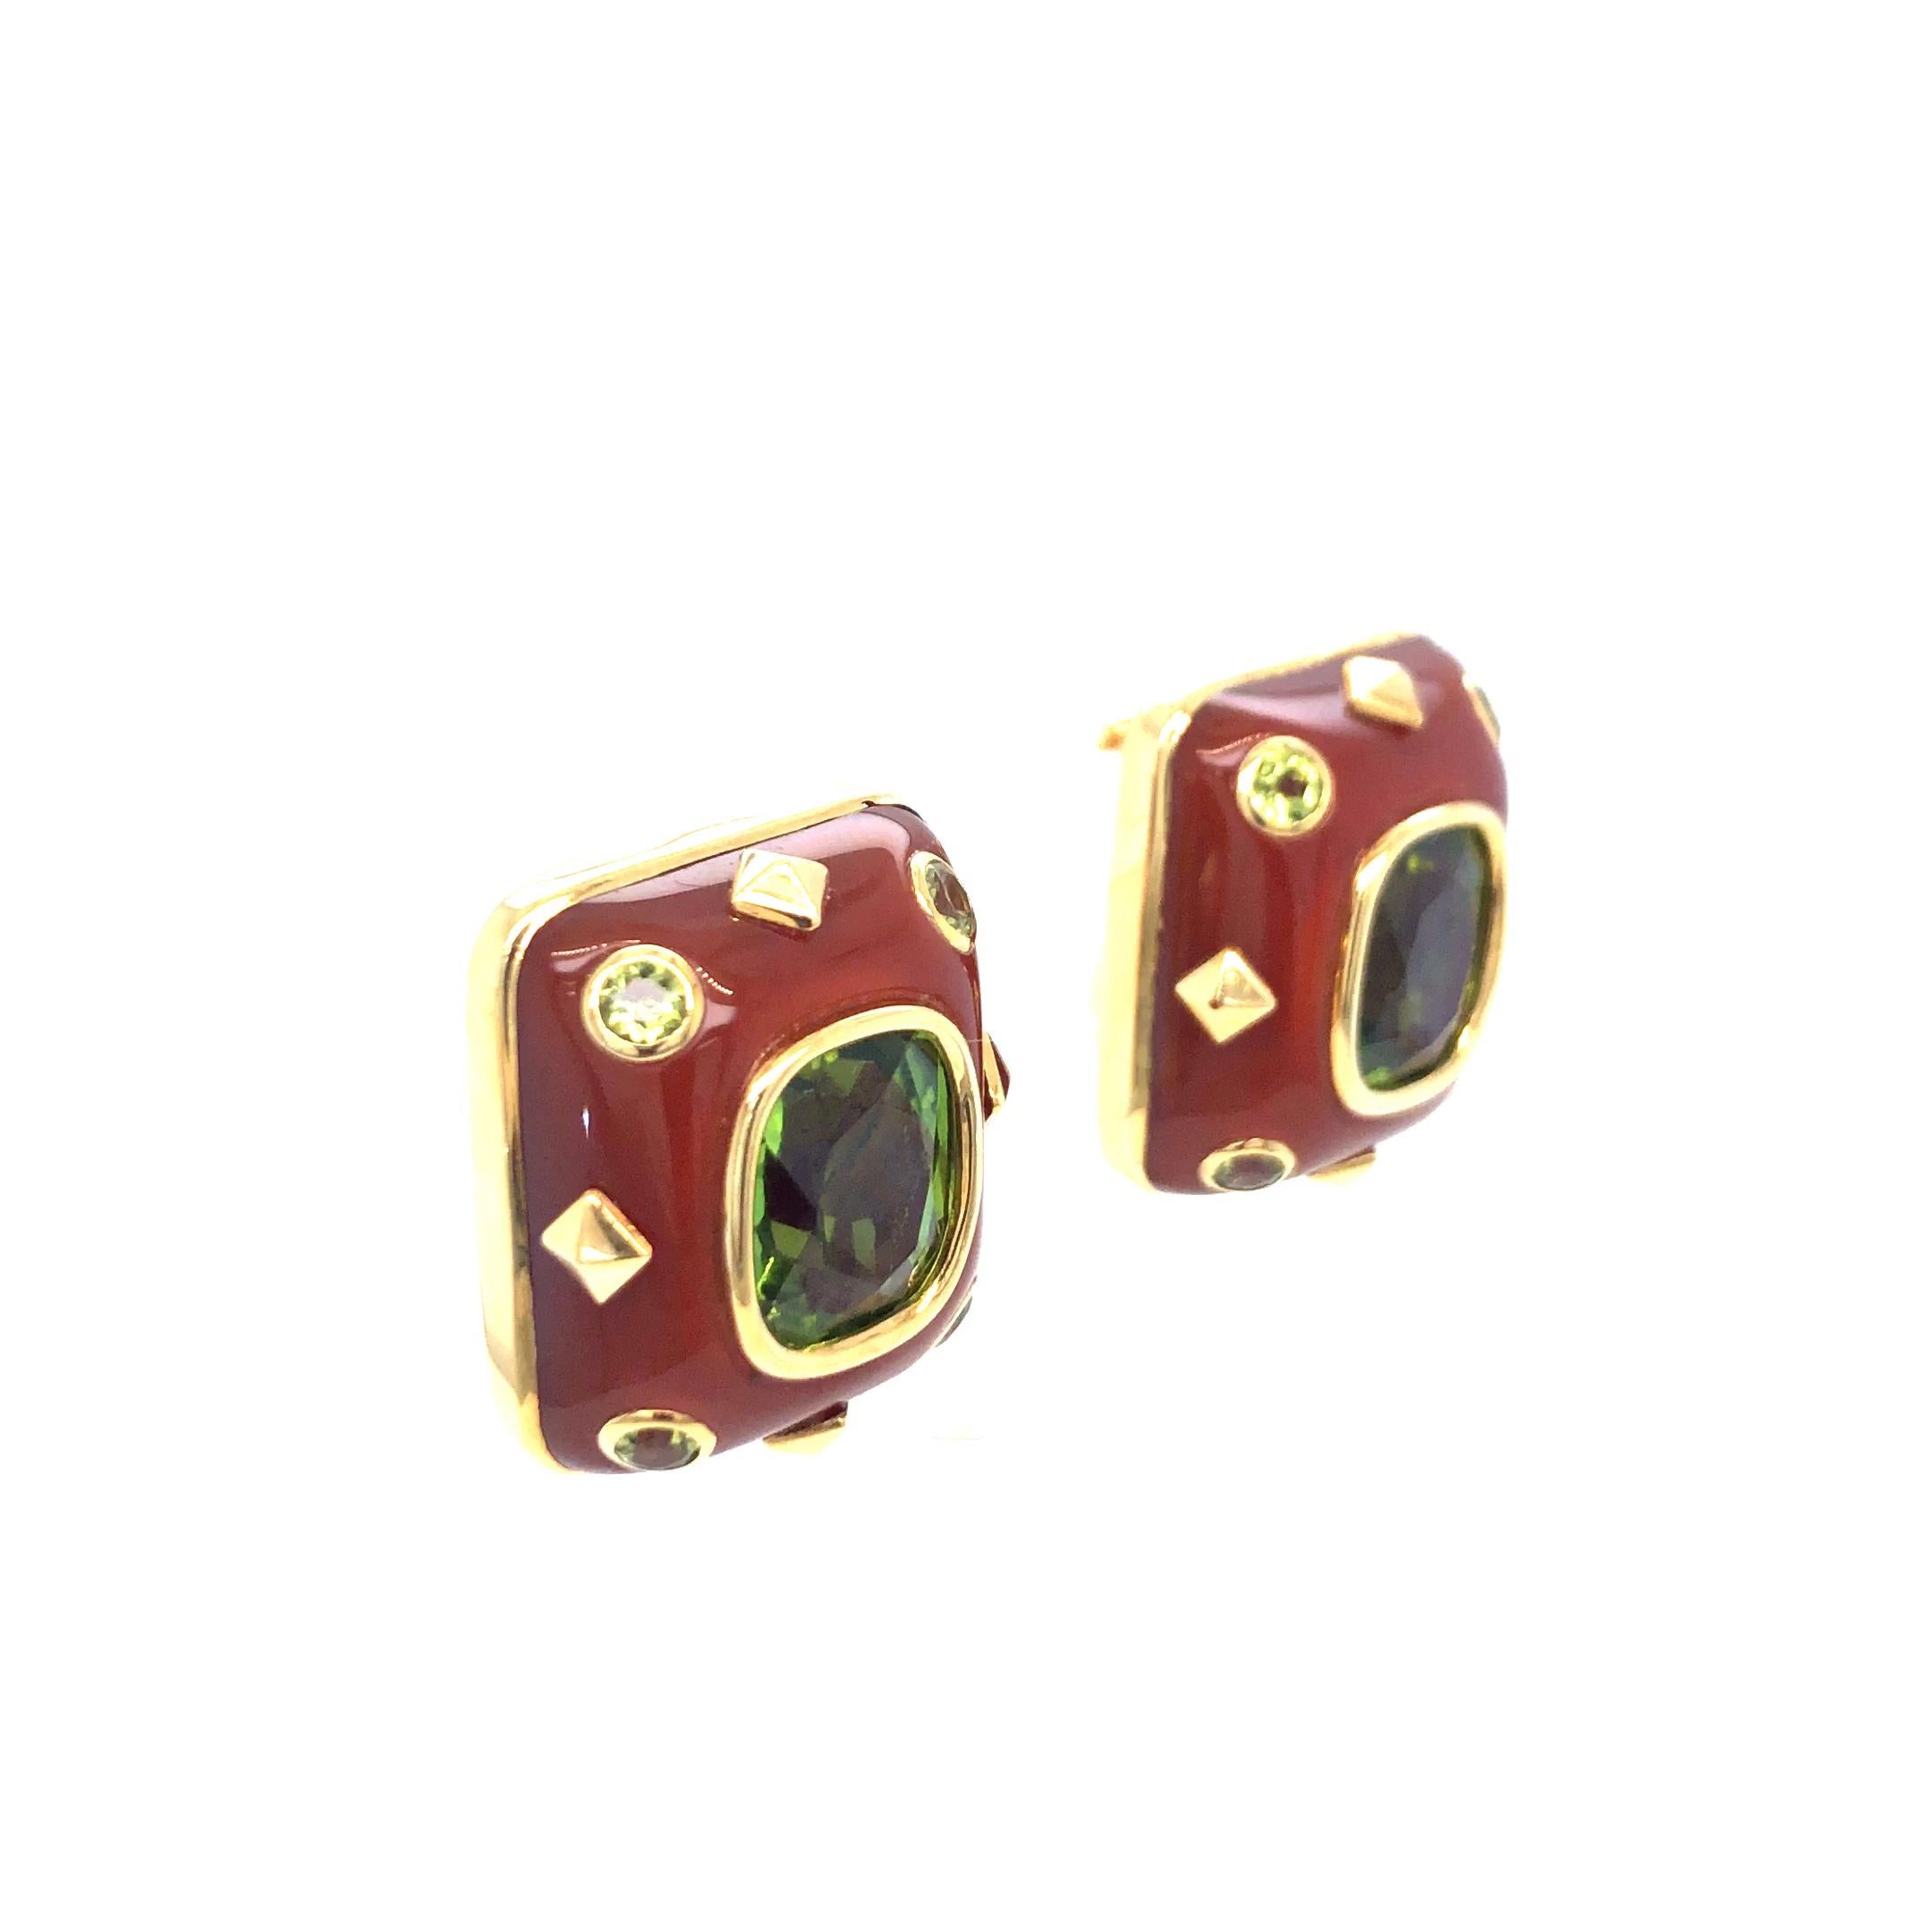 Trianon Boucles d'oreilles à clip en or jaune 18 carats avec péridot et cornaline.
1